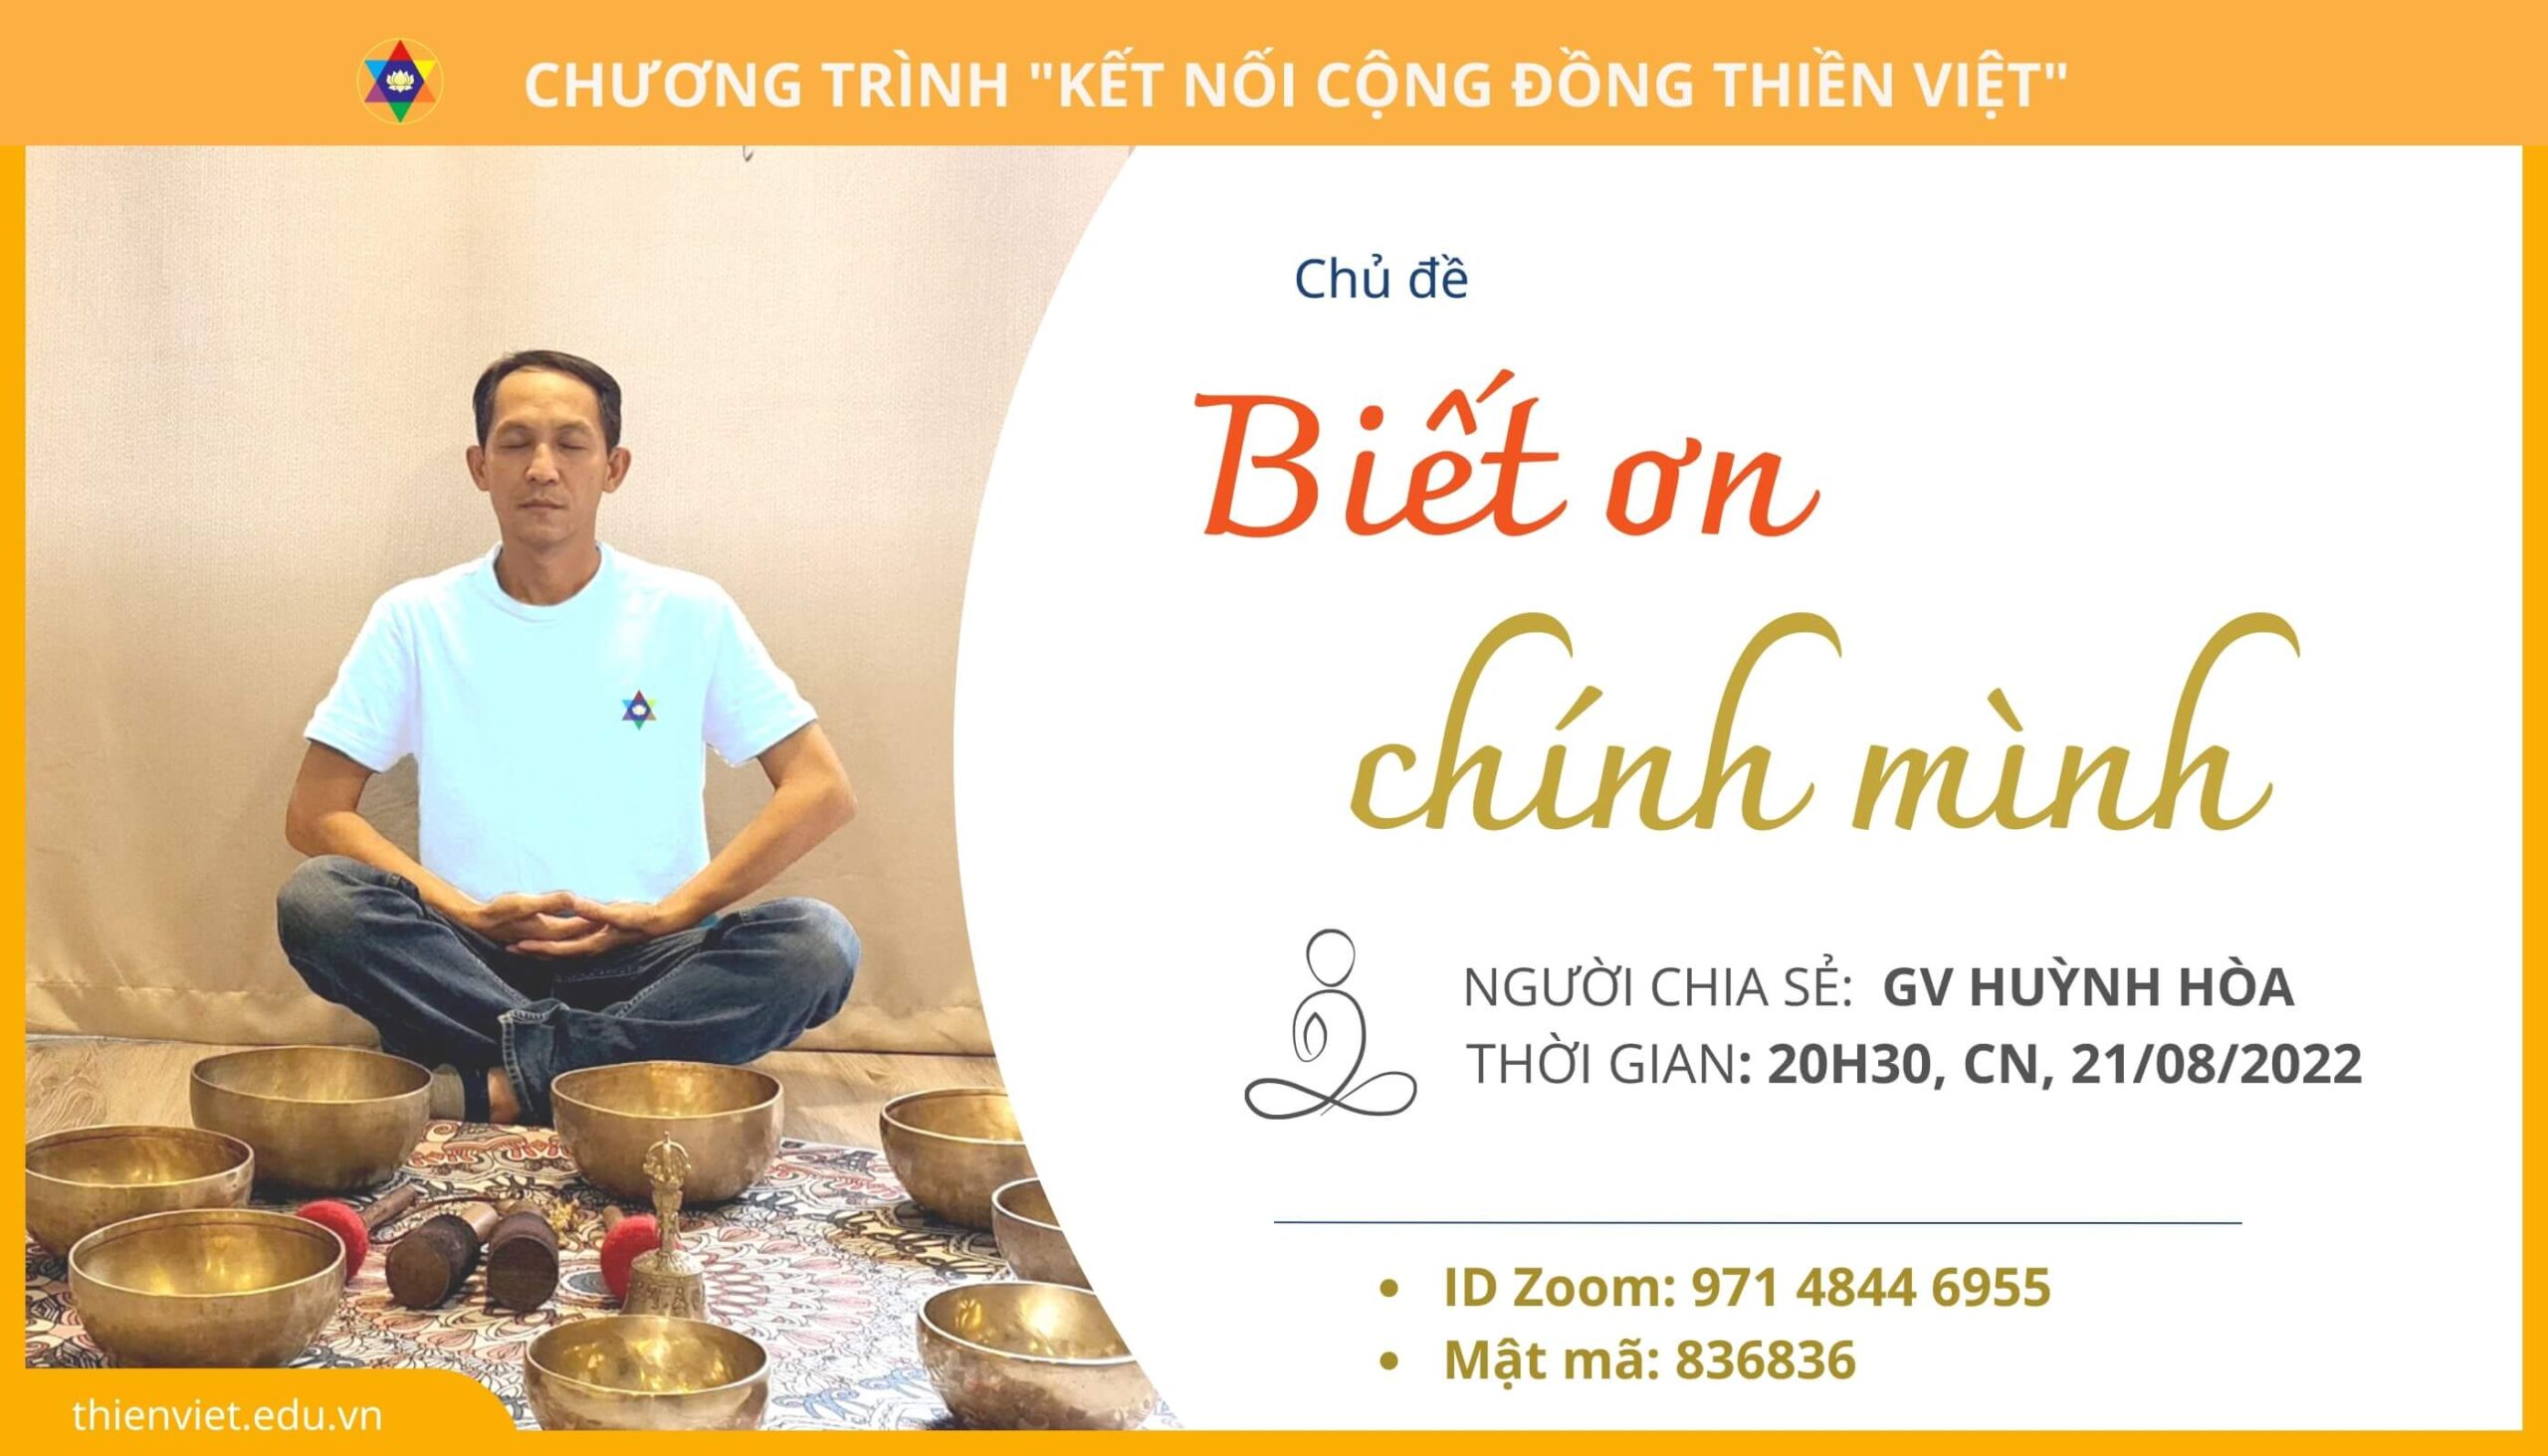 ket-noi-cong-dong-thien-viet-cn-19-2 (1)